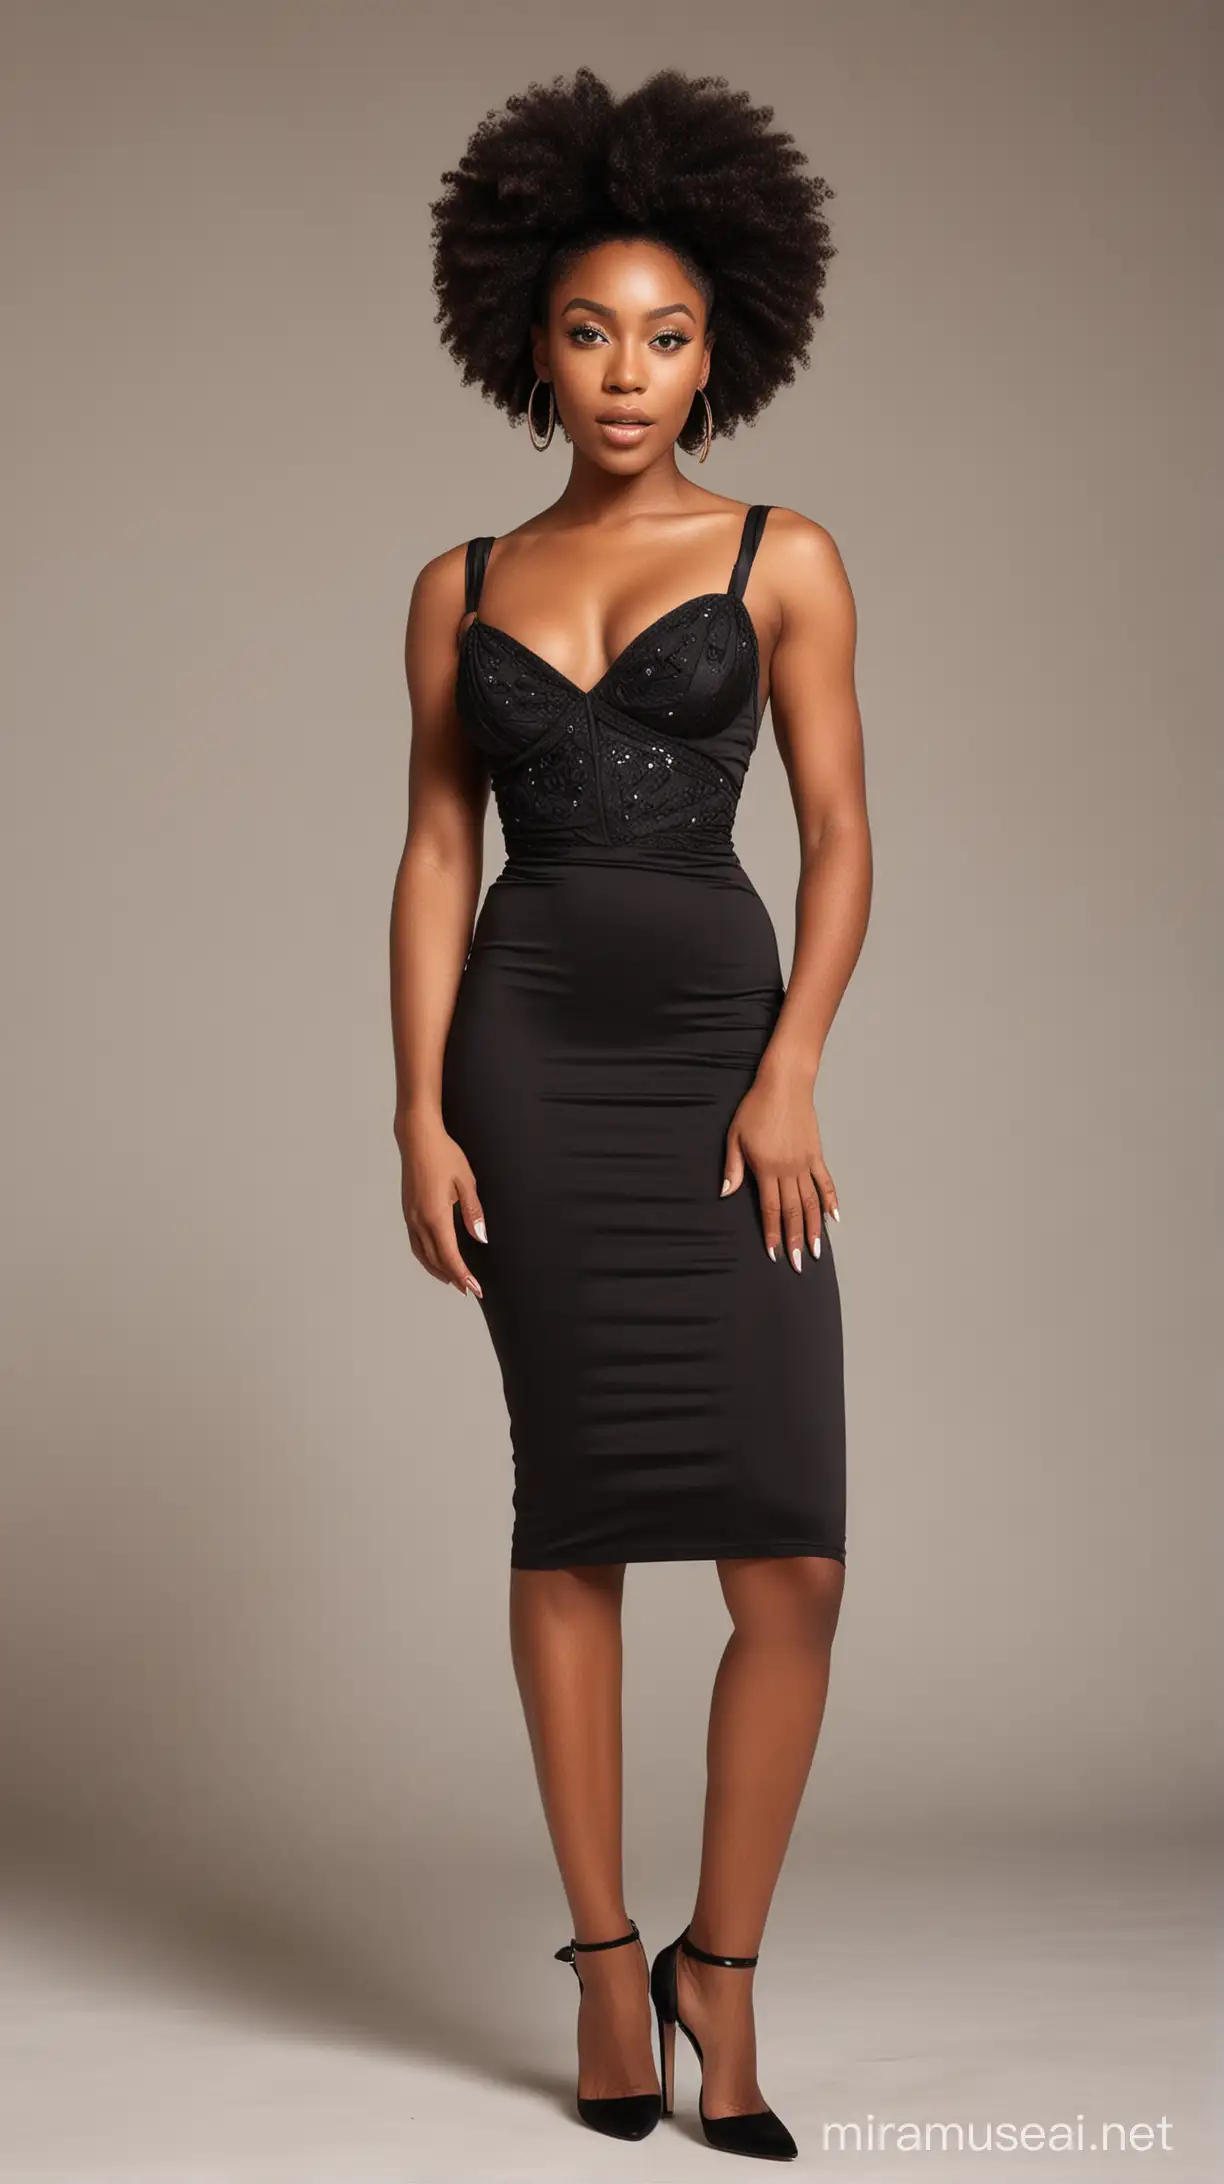 Elegant Black Women in Stunning Ballroom Dresses